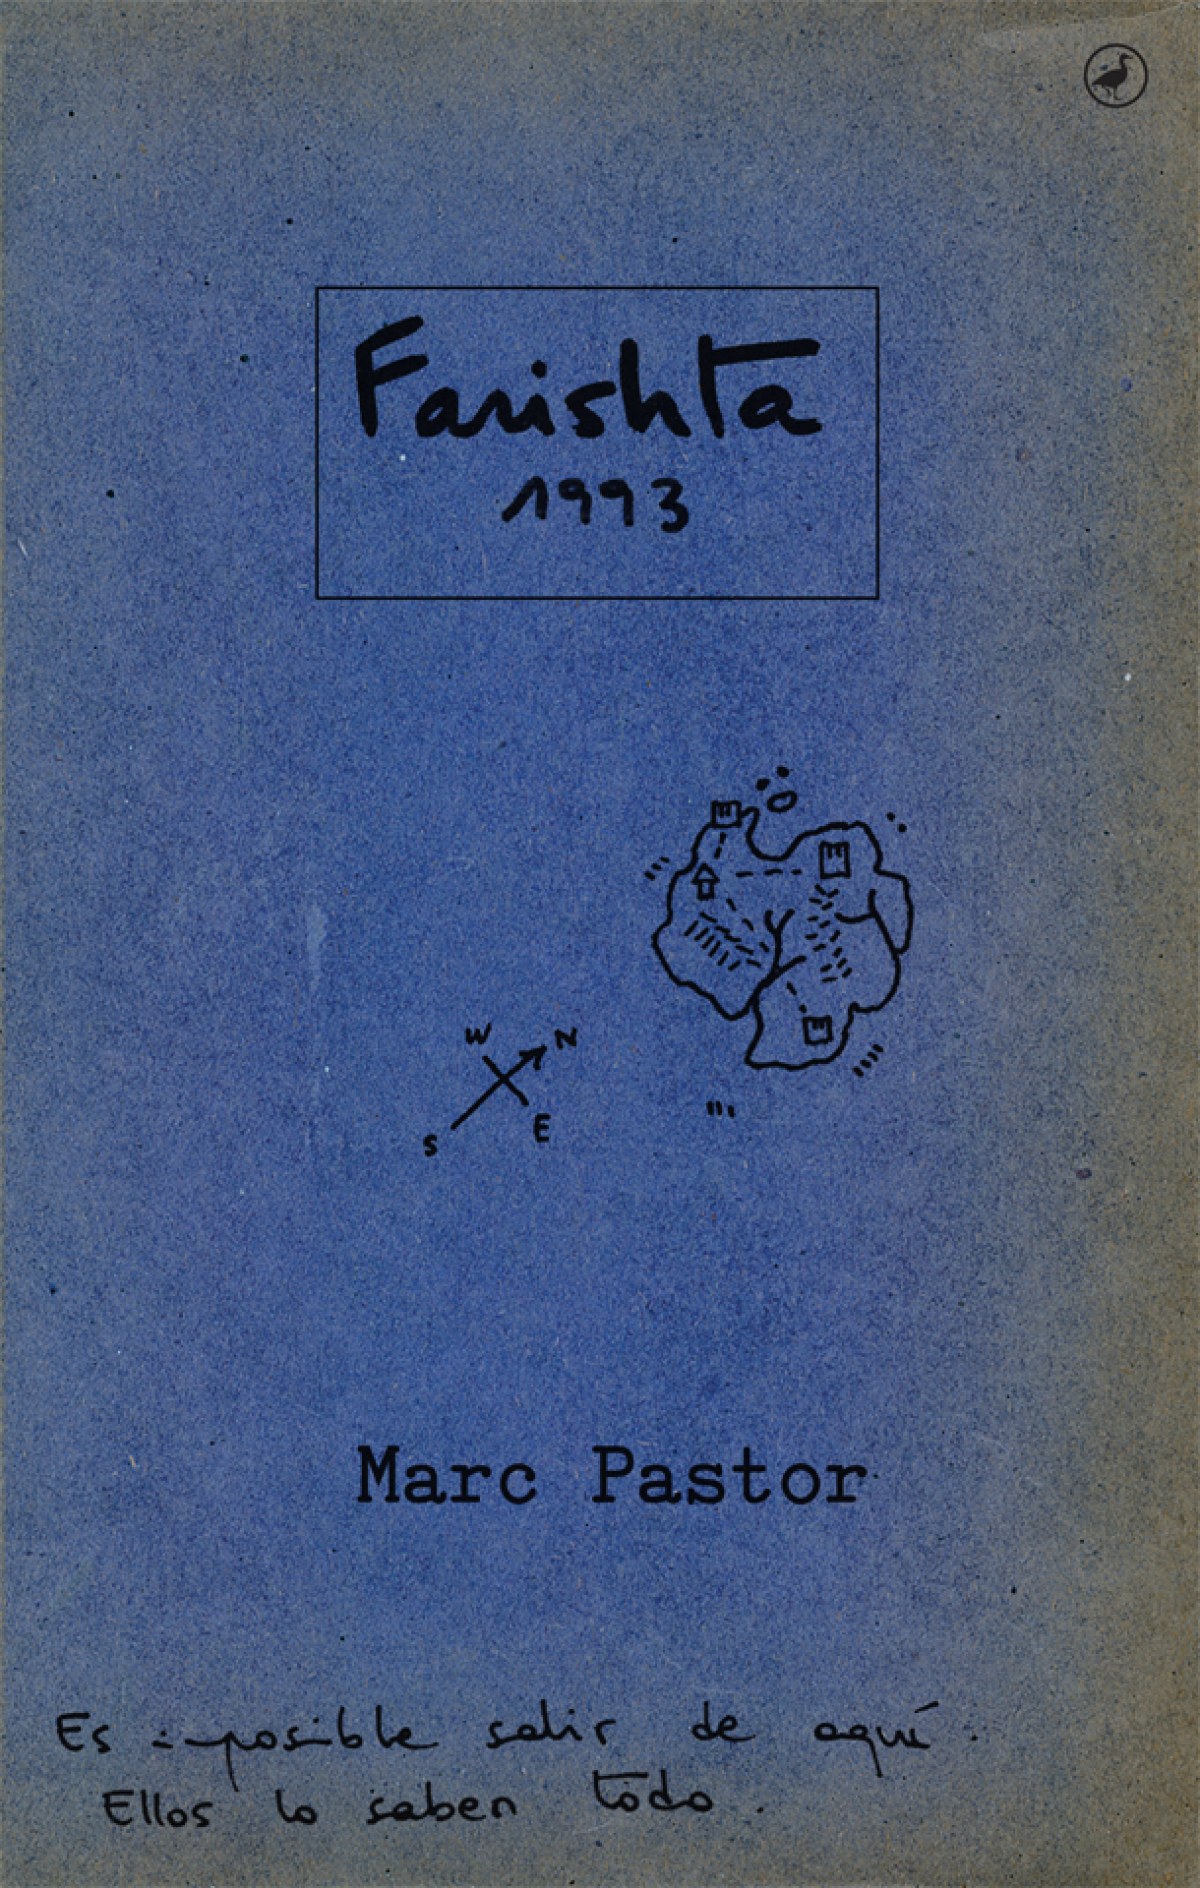 Farishta 1993 - Pastor, Marc